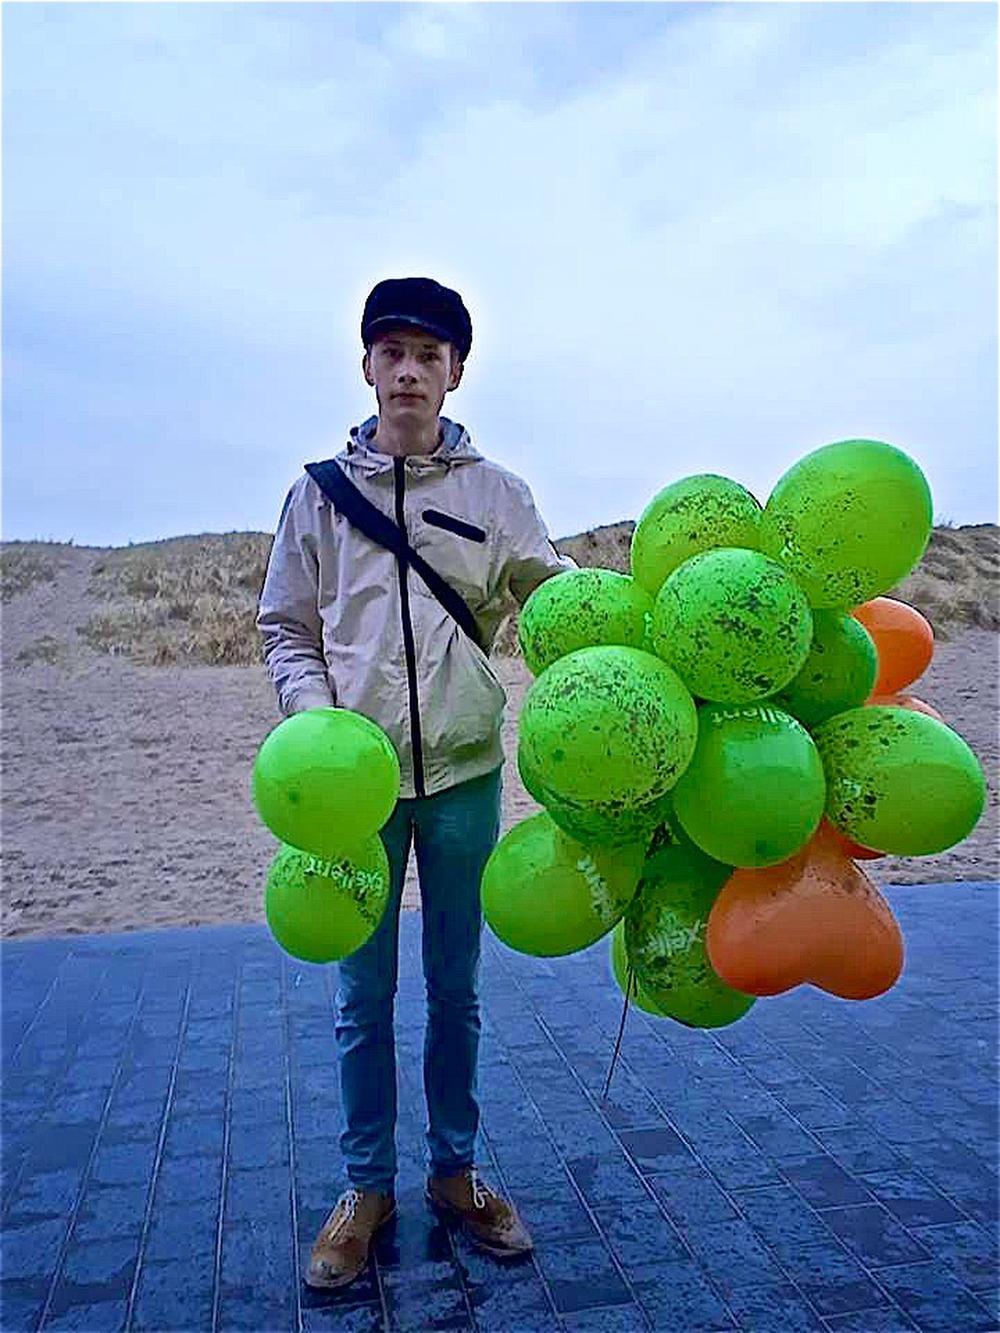 Bedrijf geeft gehoor aan klacht over ballonnenactie en gaat zelf strand opruimen